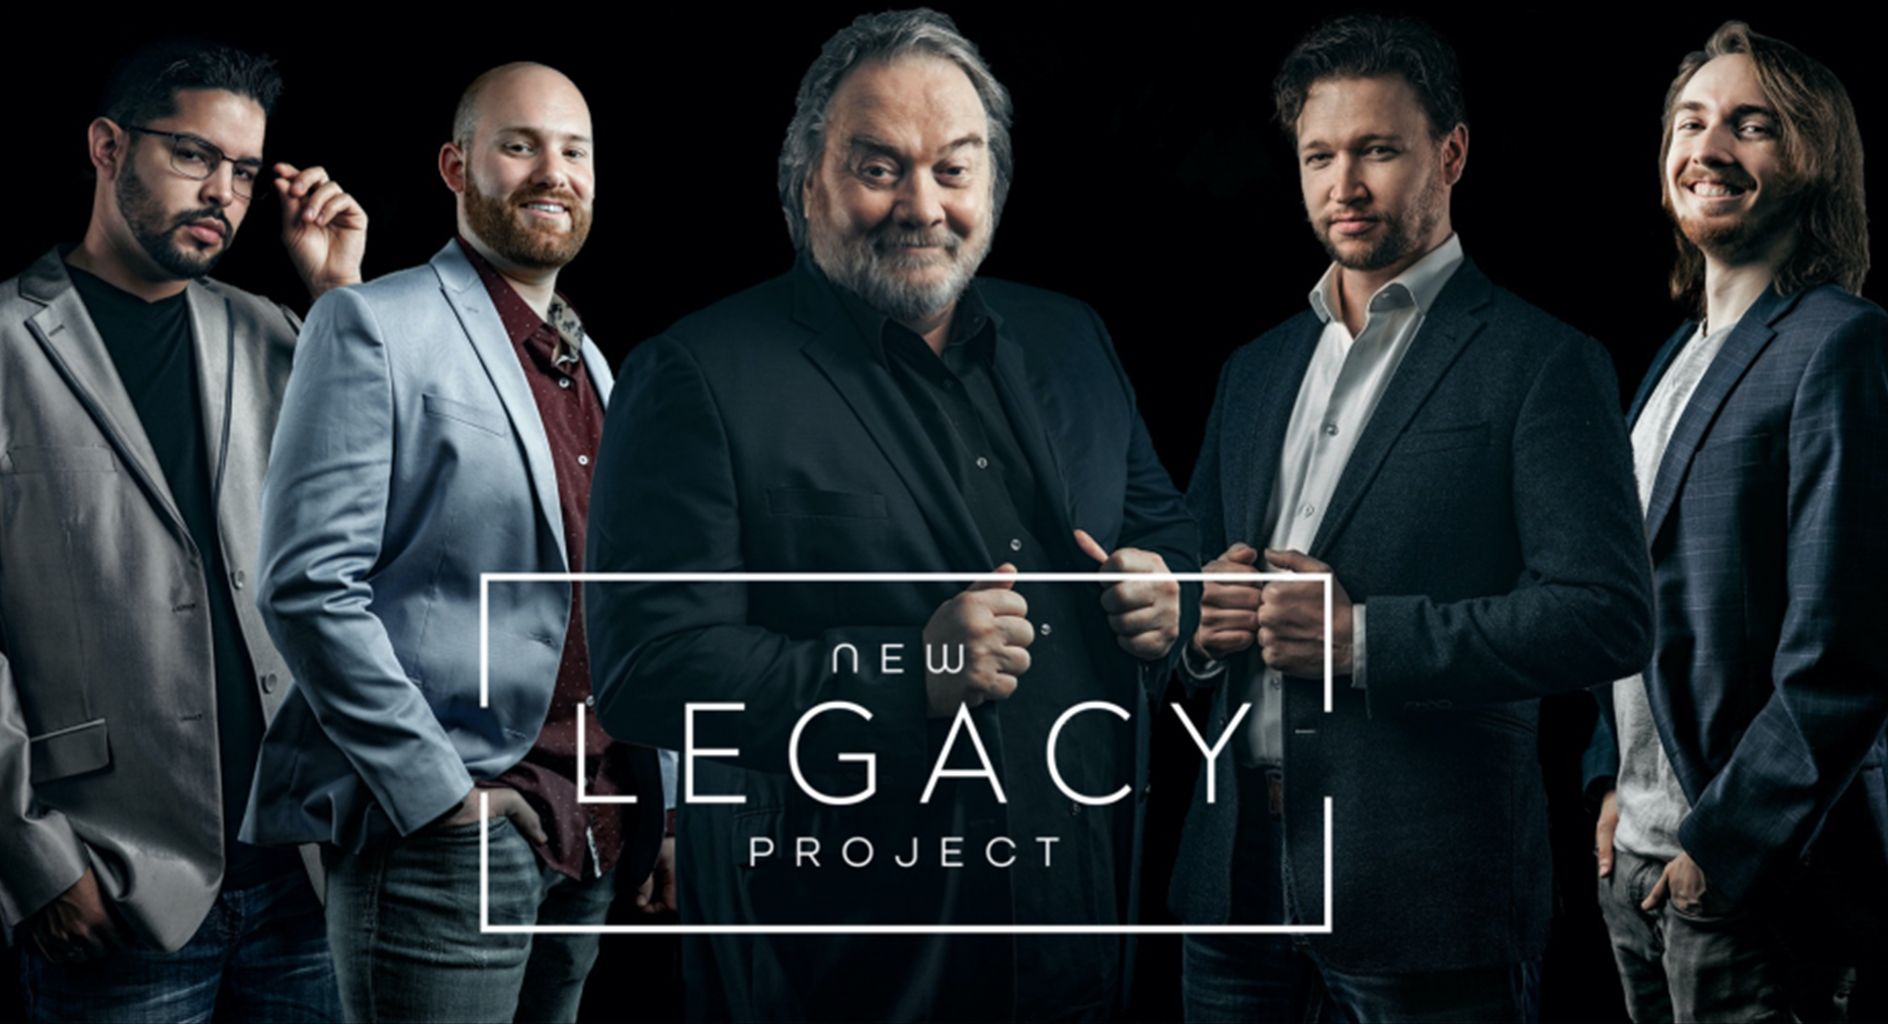 Popular Nashville-based Quartet, New Legacy, presenting free live concert event in Abilene, Abilene, Texas, United States